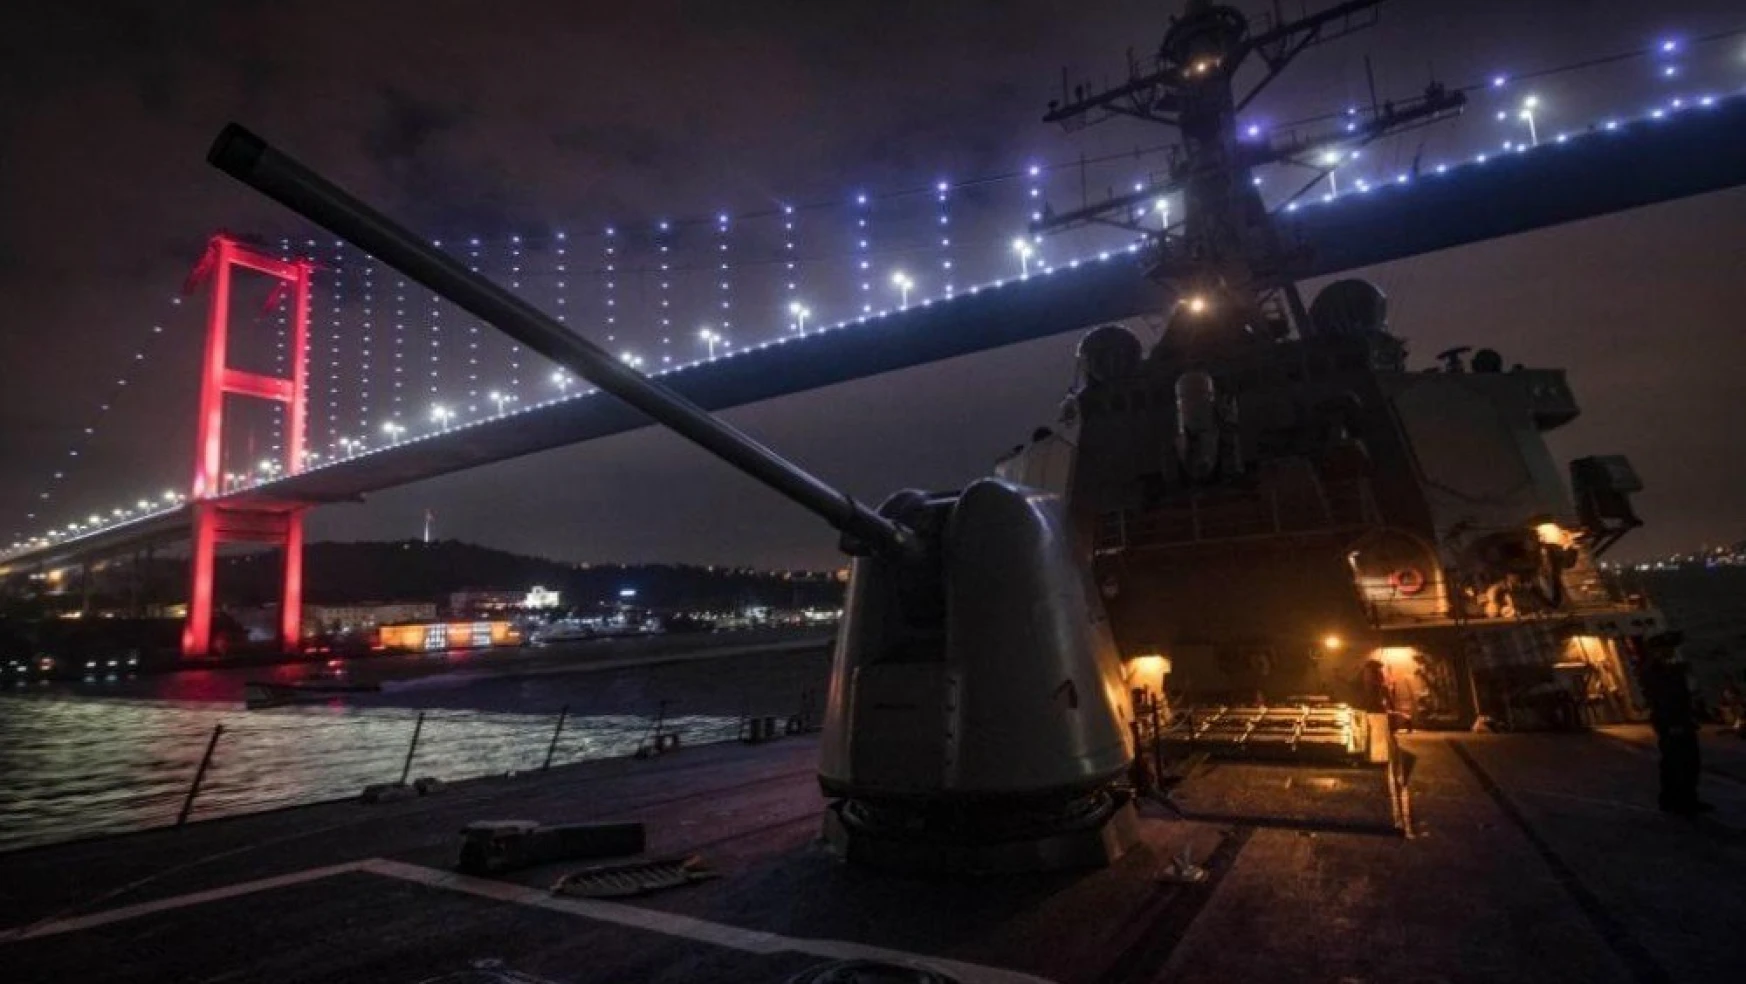 ABD Donanması, İstanbul Boğazı'nı kapak fotoğrafı yaptı